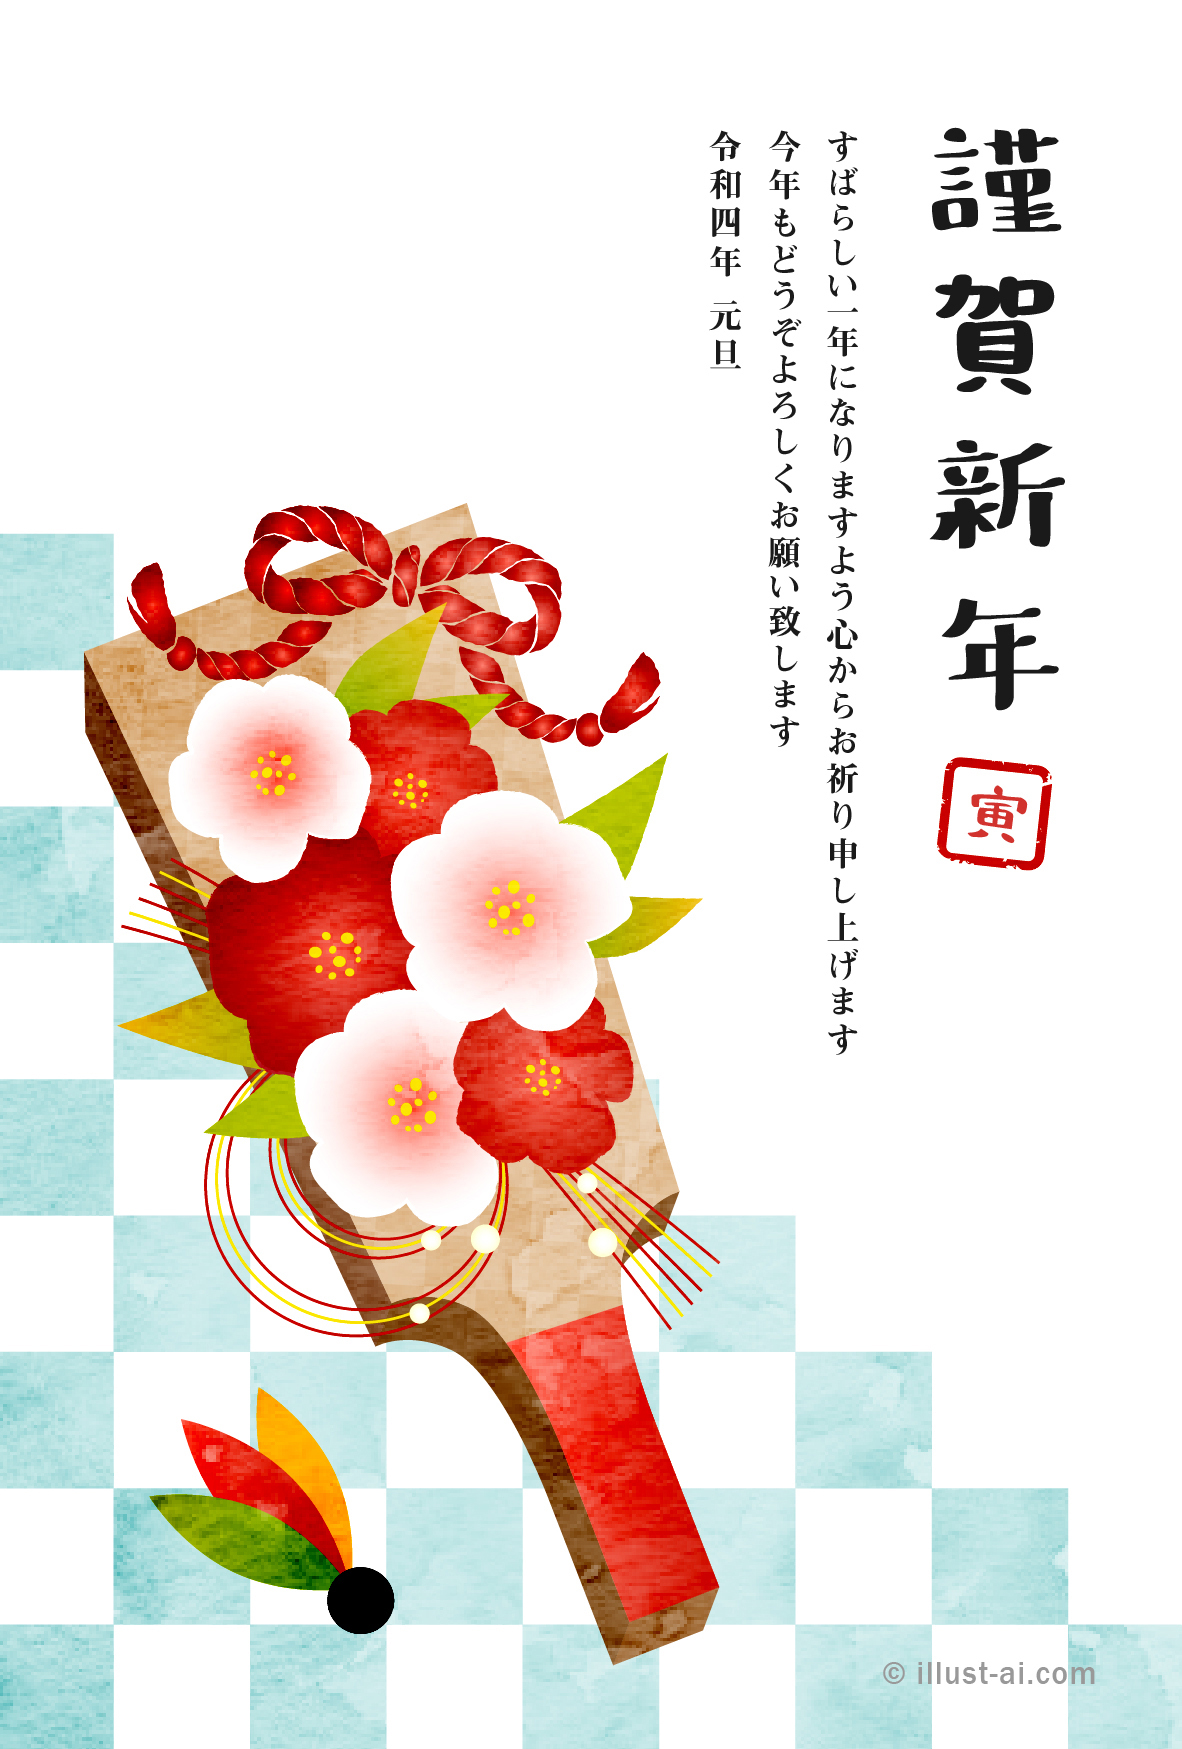 年賀状 寅年 椿の花飾り羽子板とさわやかな水色の市松模様 年賀状22無料イラスト素材集